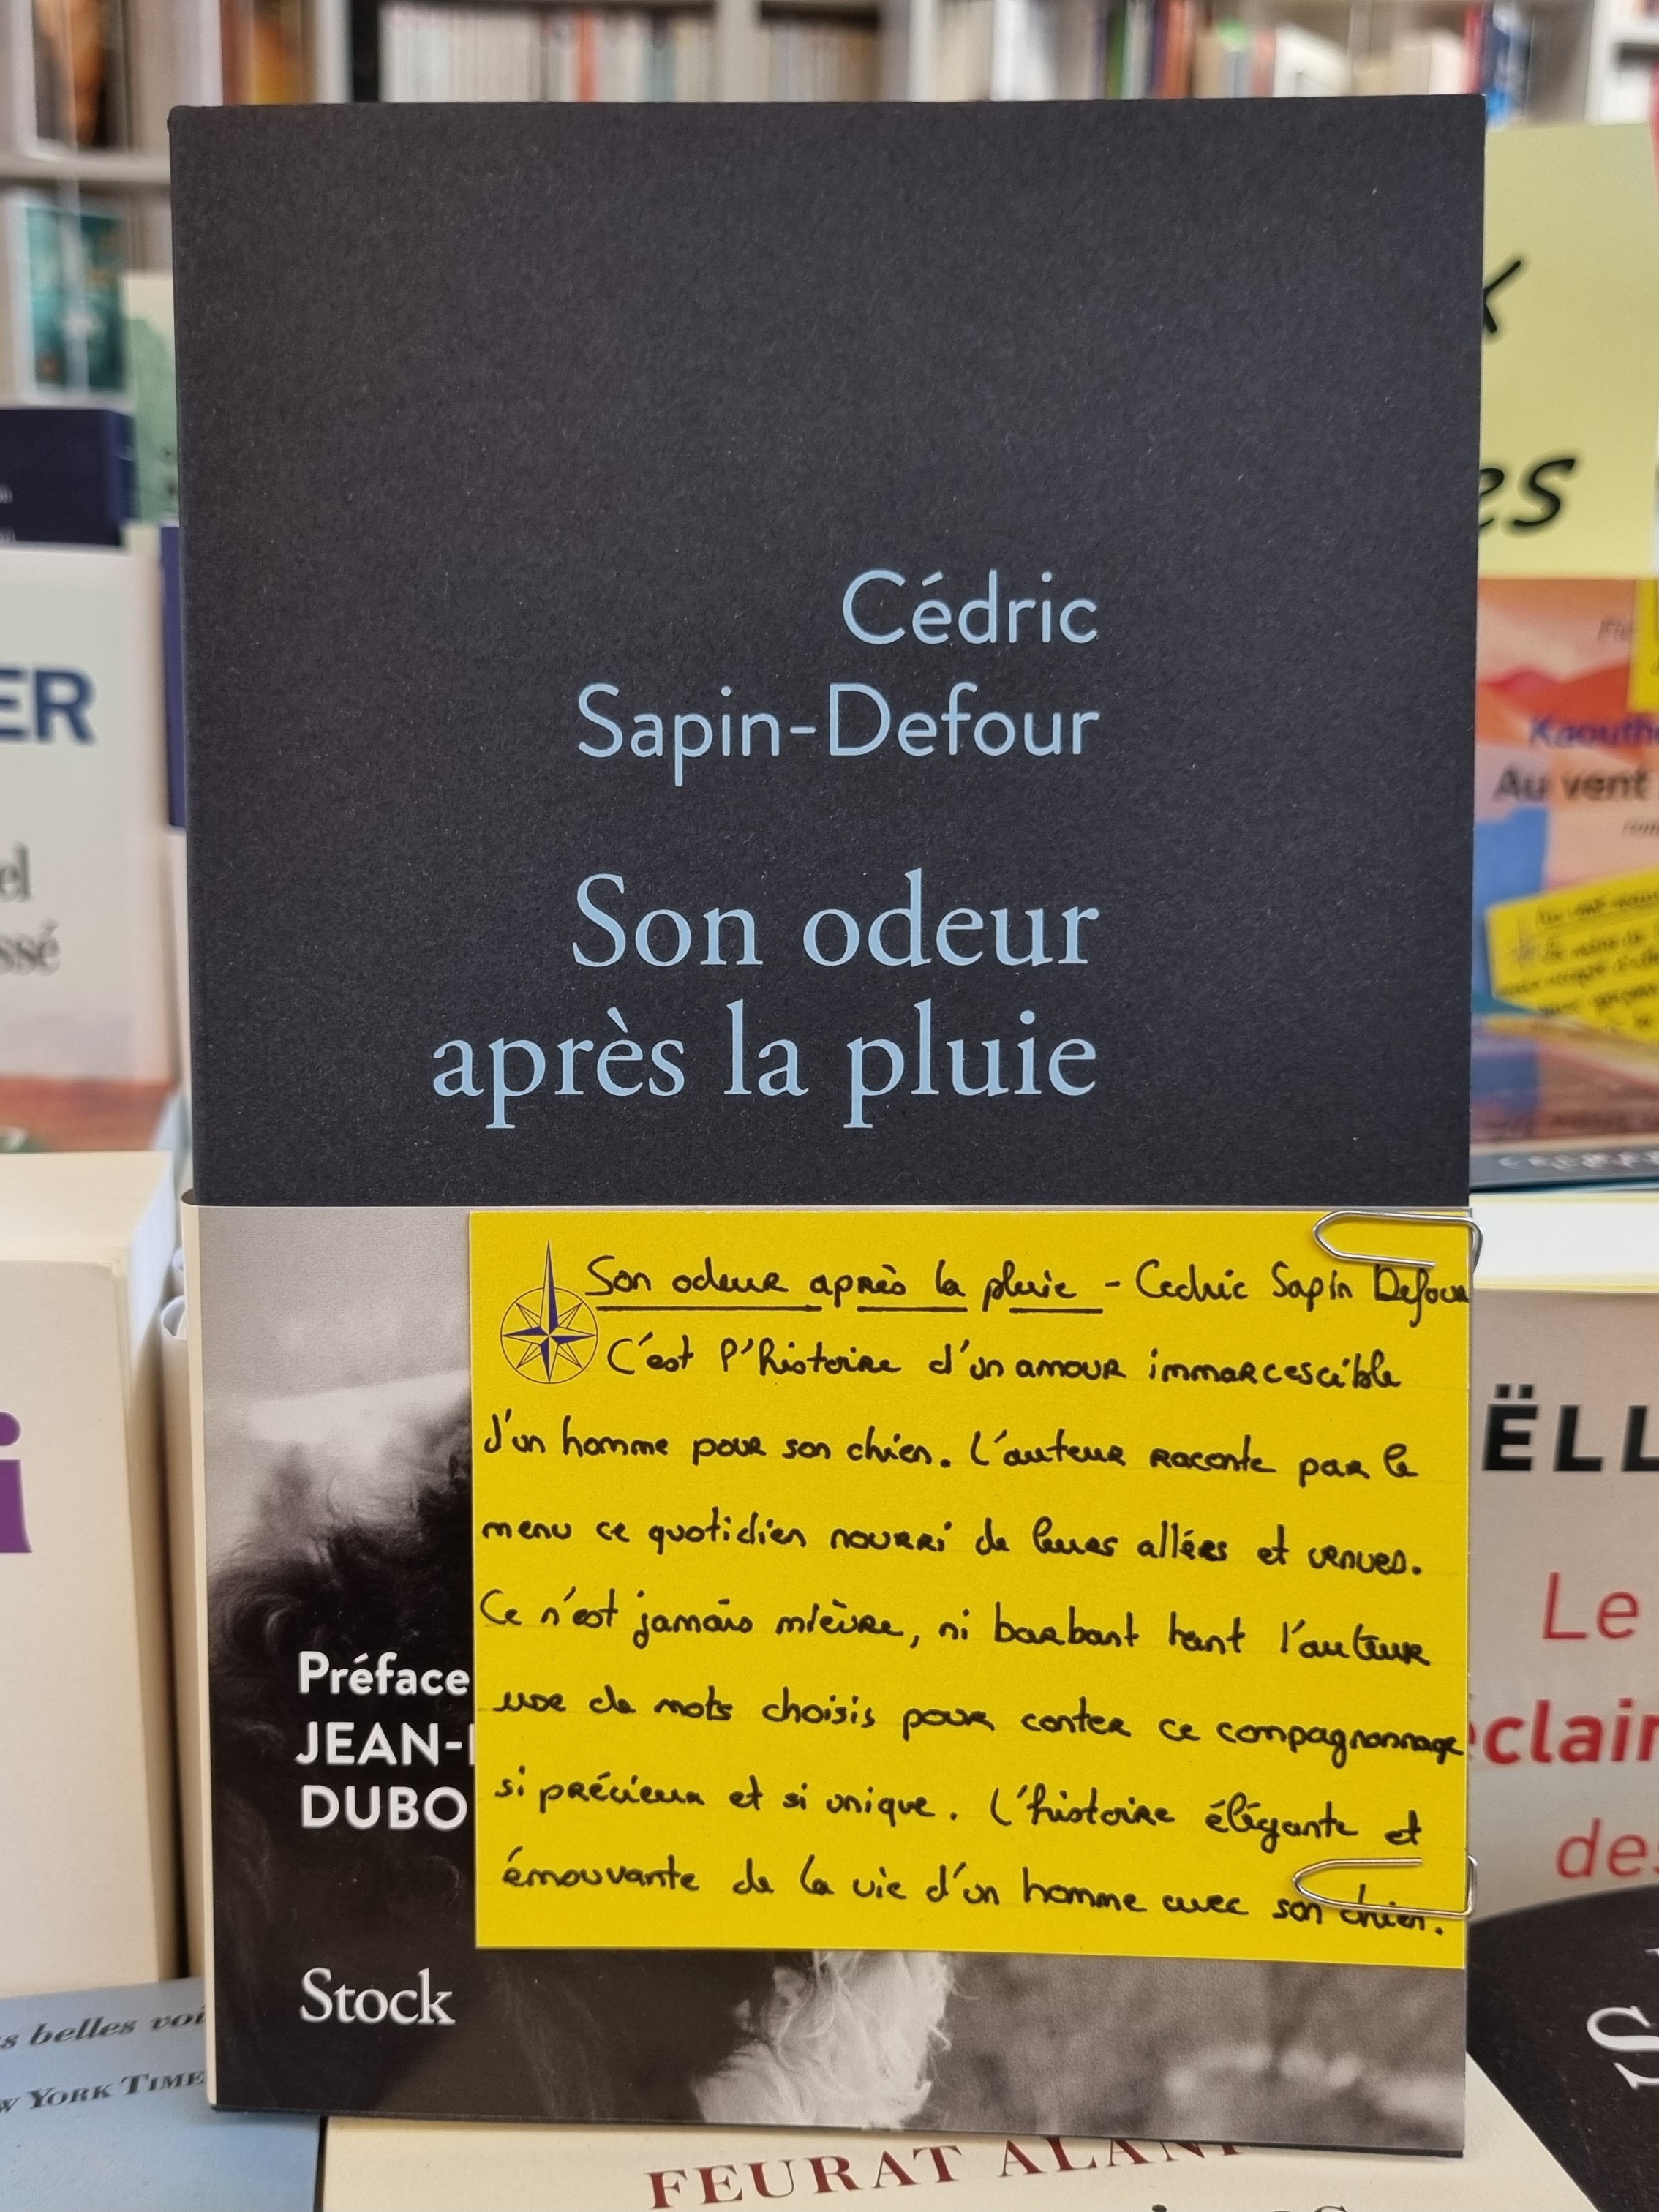 Son odeur après la pluie », de Cédric Sapin-Defour : bien plus qu